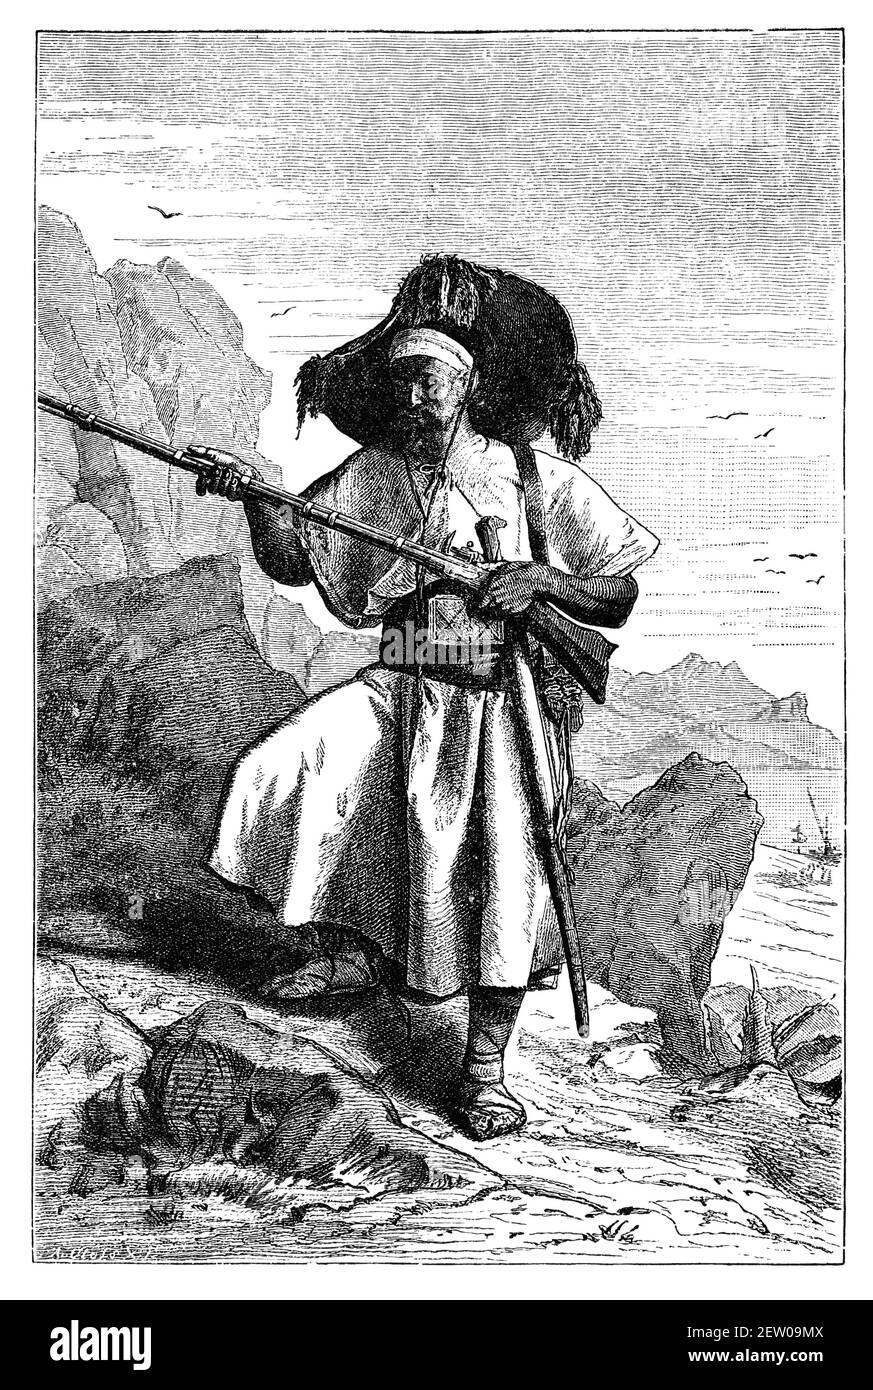 Uomo berbero Kabyle armato da oggi Algeria.Cultura e storia del Nord Africa. Immagine in bianco e nero d'epoca. 19 ° secolo. Foto Stock